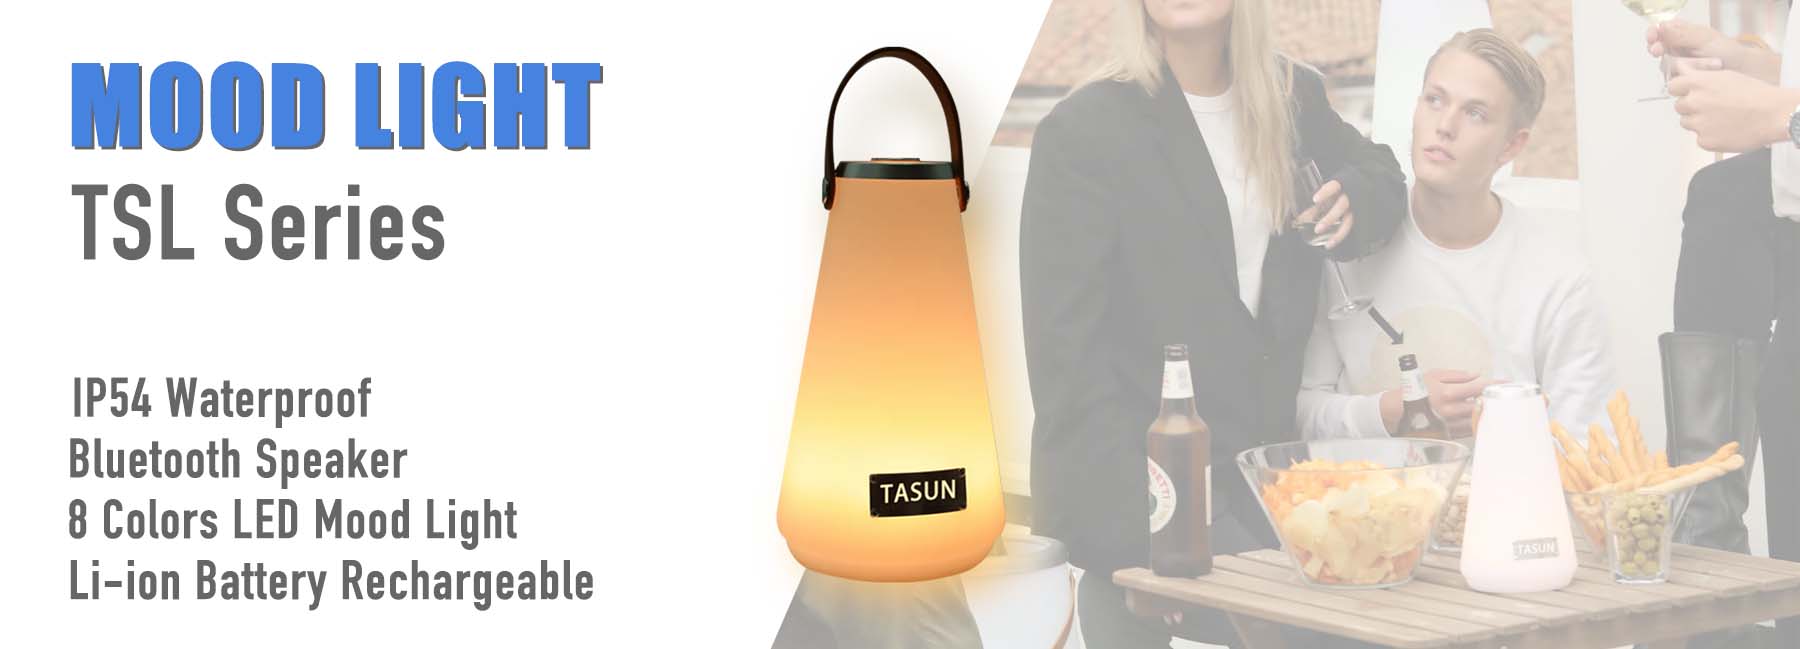 TASUN mood light TSL series